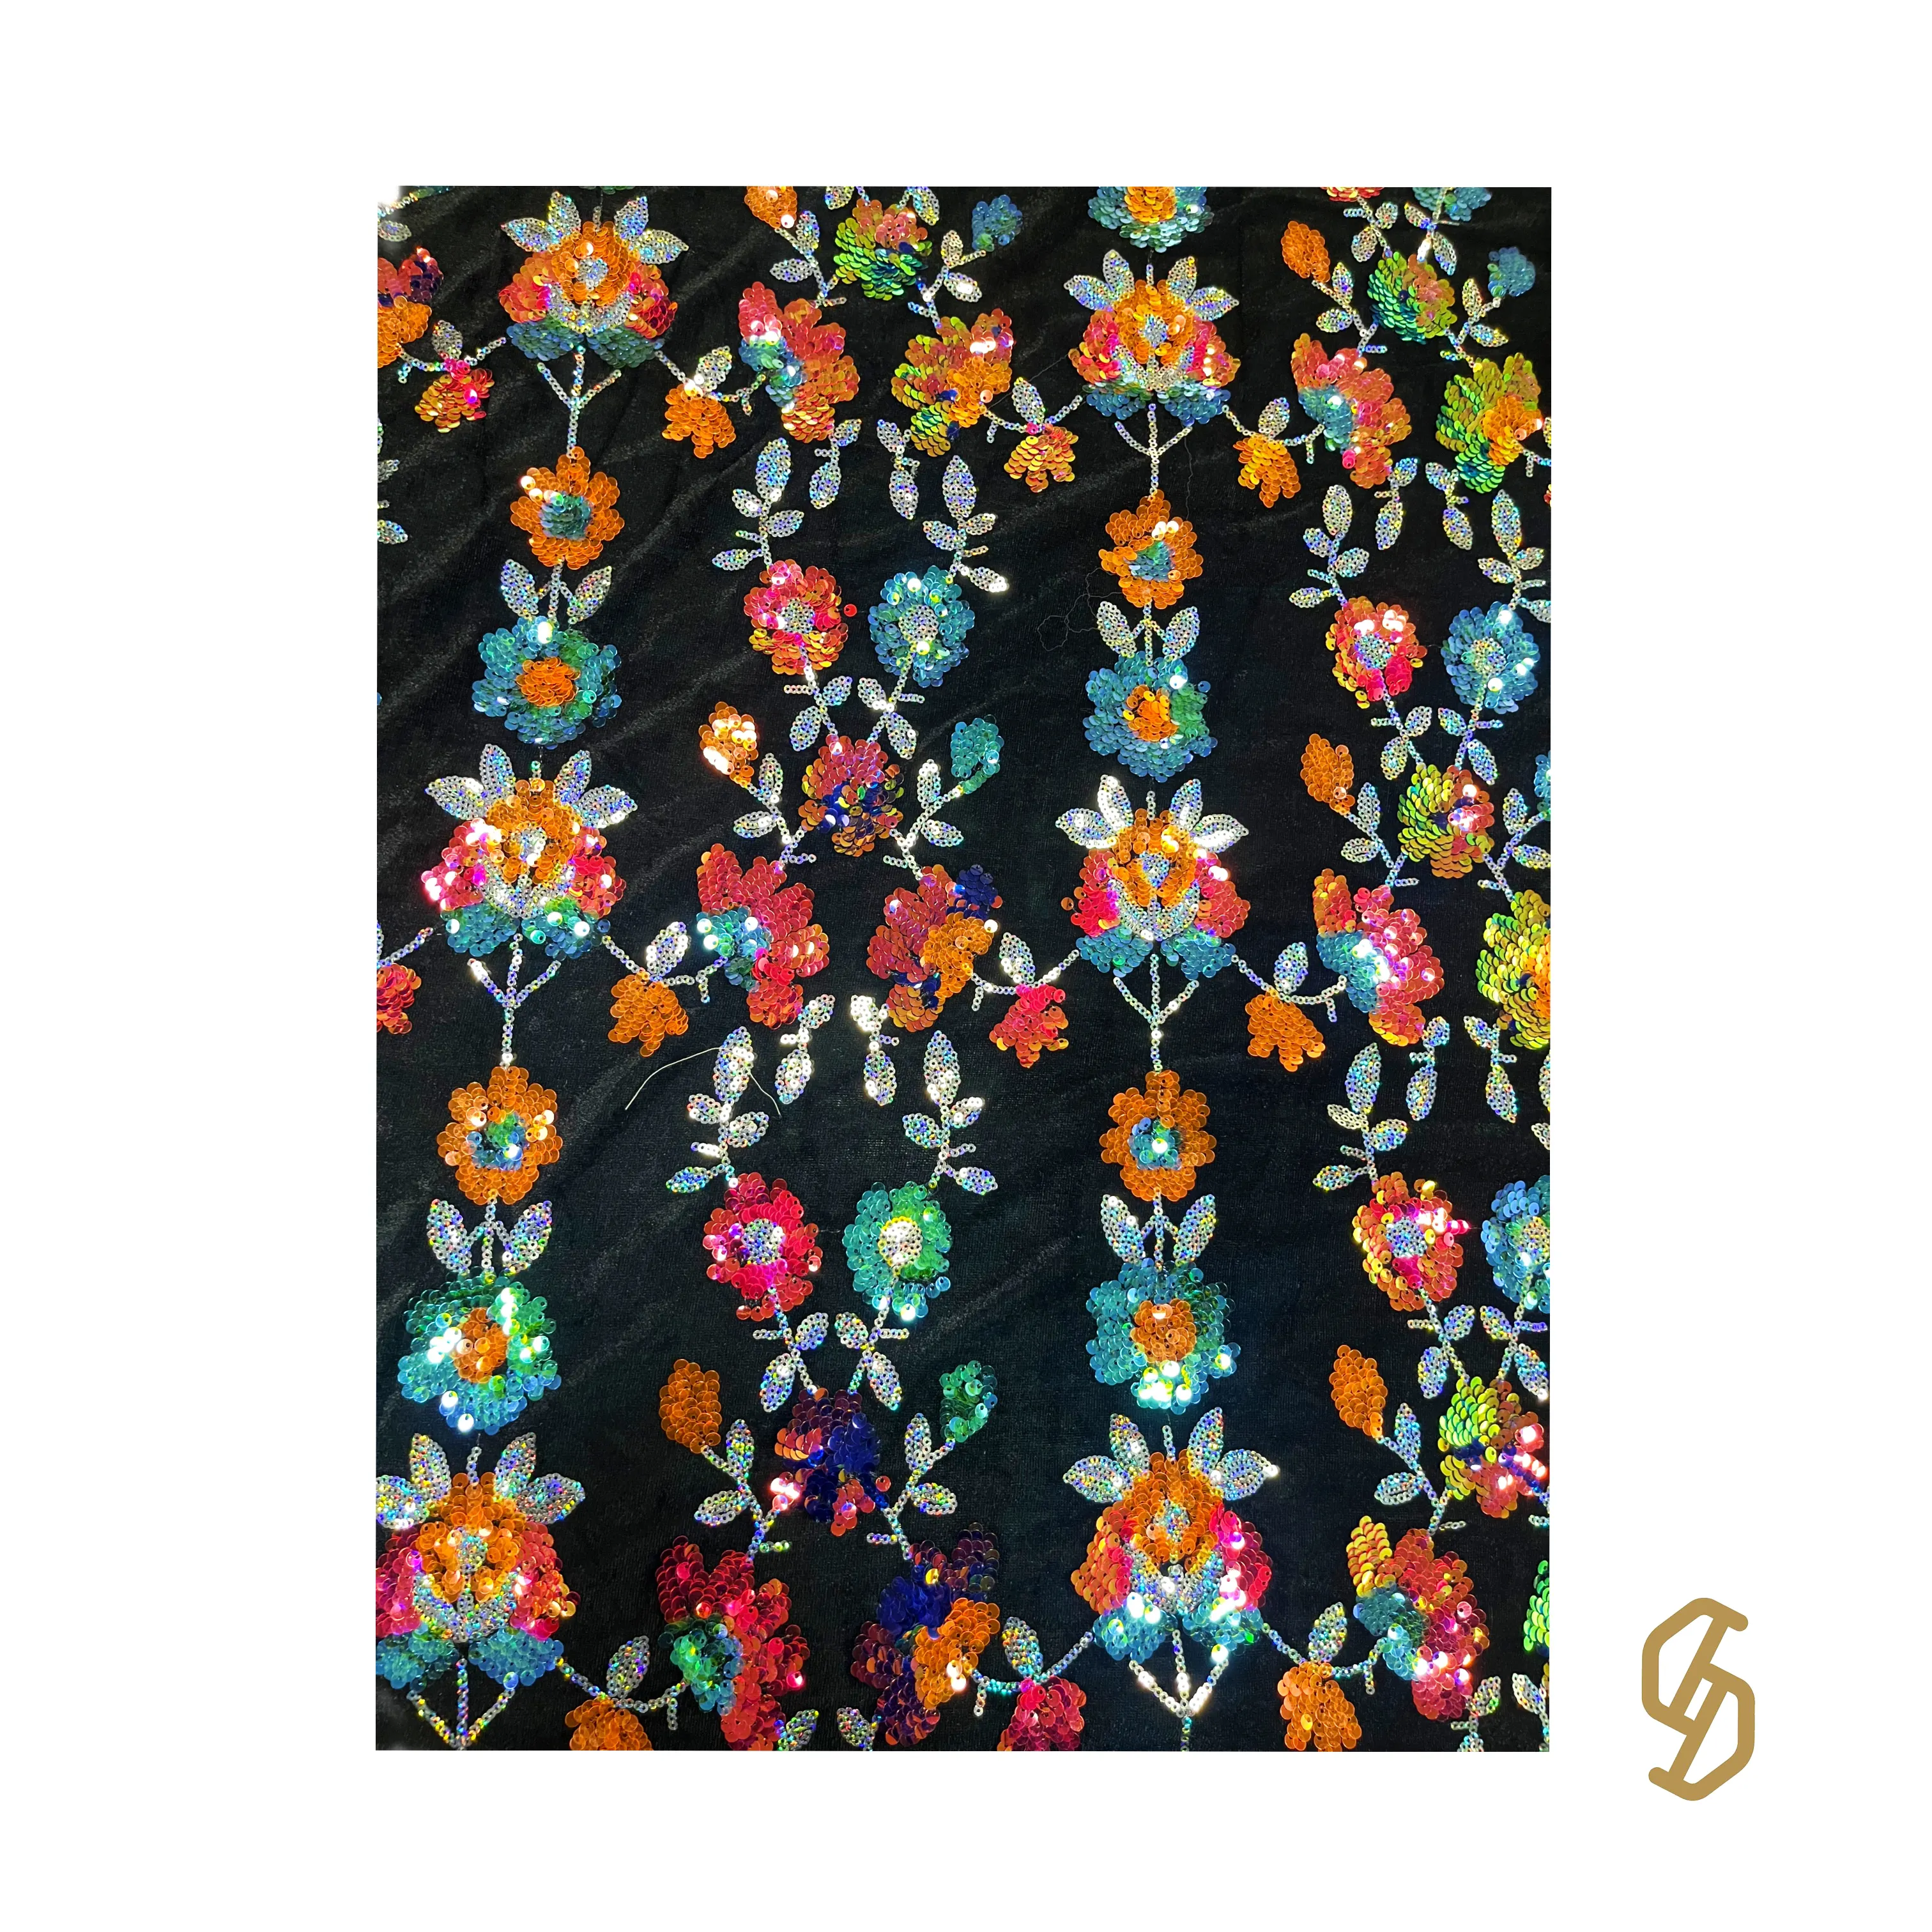 Diseño de patrón de flores coloridas tela de terciopelo de lentejuelas personalizada suave aspecto brillante y sensación tela bordado de lentejuelas